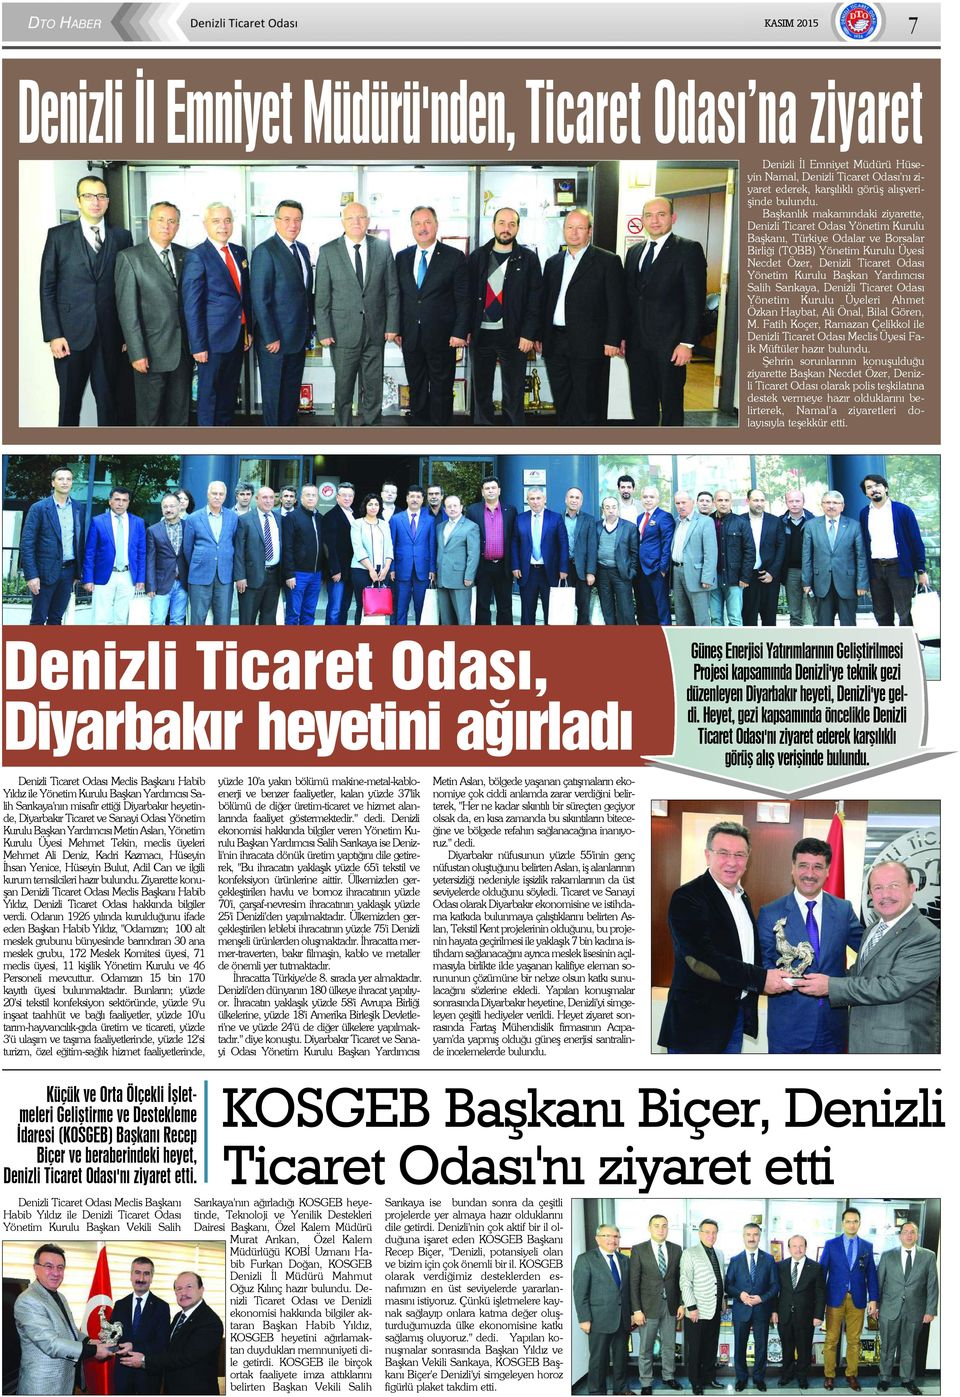 Yardýmcýsý Salih Sarýkaya, Denizli Ticaret Odasý Yönetim Kurulu Üyeleri Ahmet Özkan Haybat, Ali Önal, Bilal Gören, M.